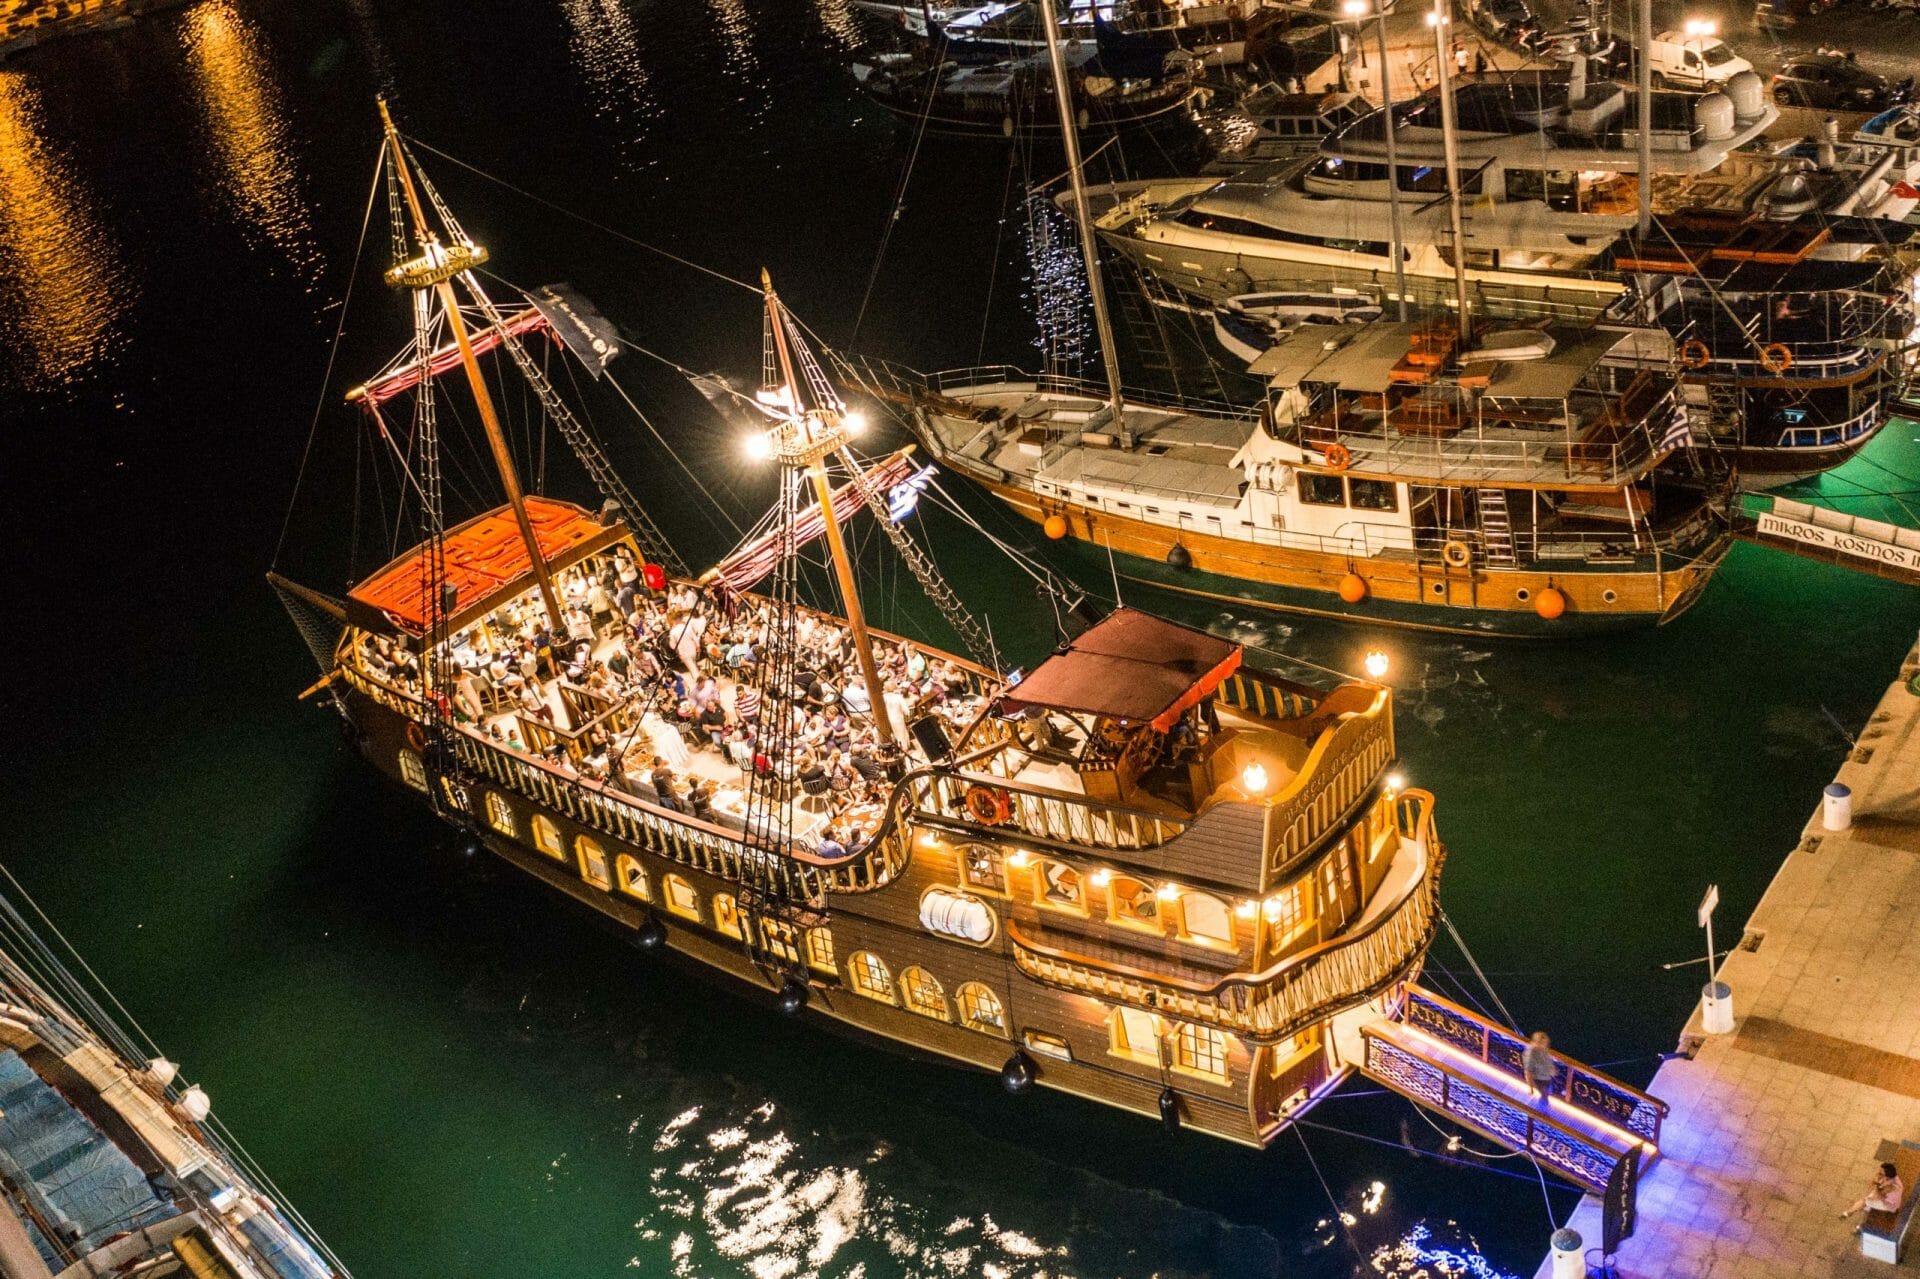 Barco de pirata Tours boat